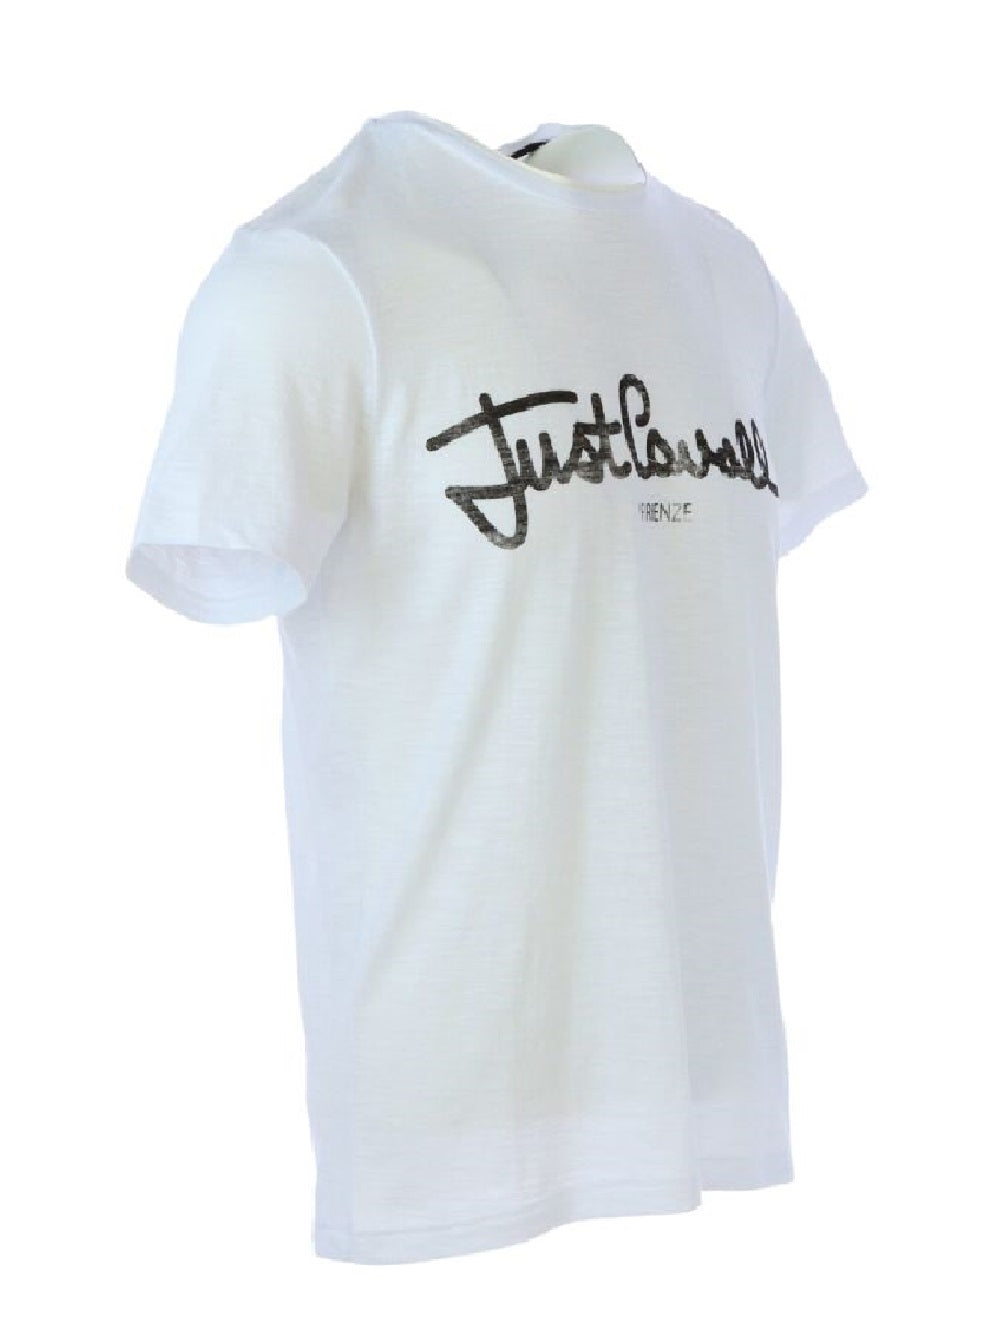 T-shirt Just Cavalli S03GC0397 in cotone con stampa del logo